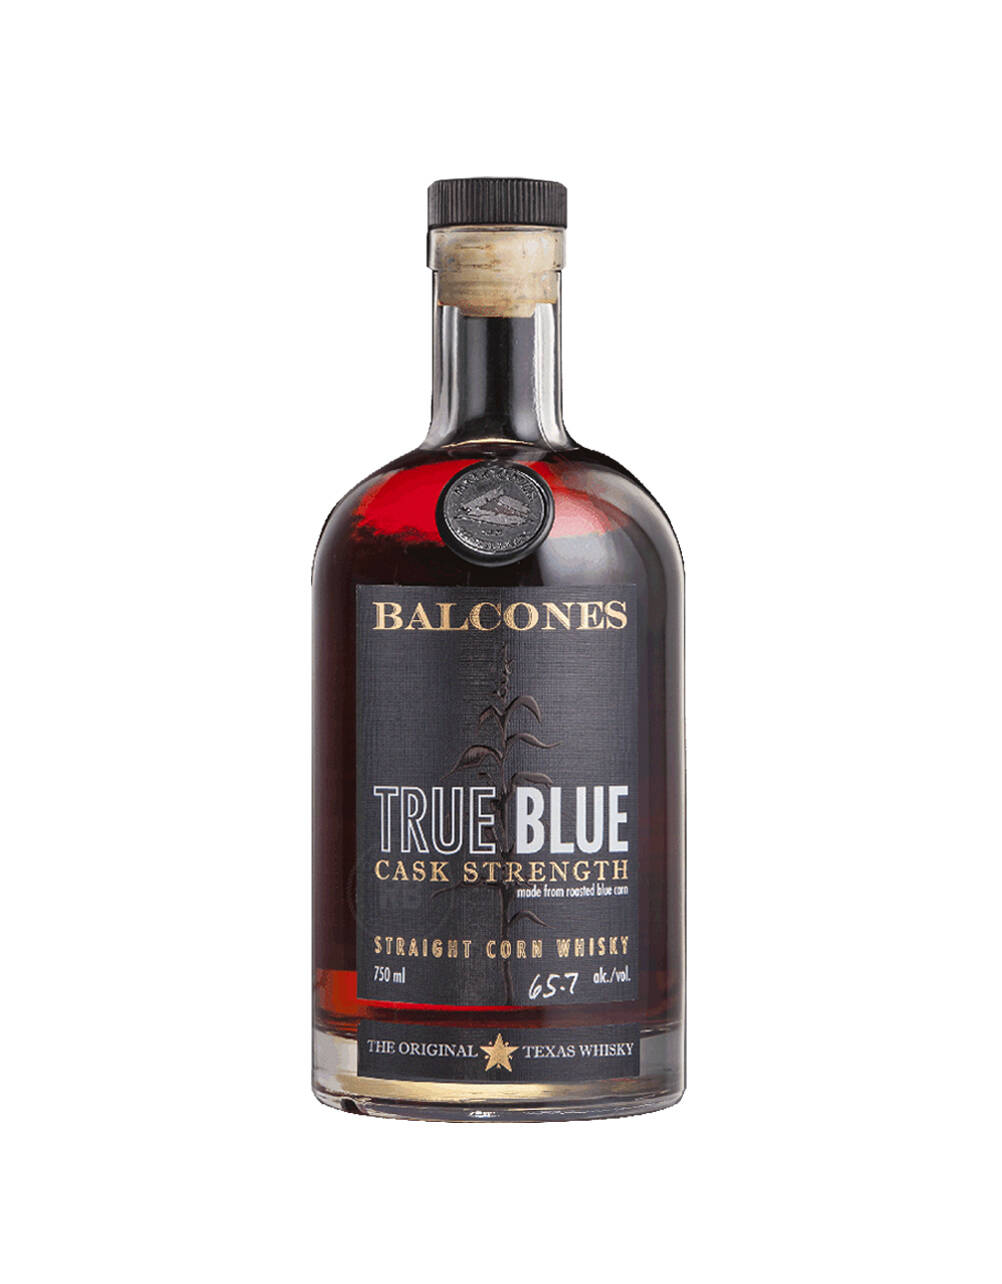 Balcones True Blue Cask Strength Single Barrel Whisky